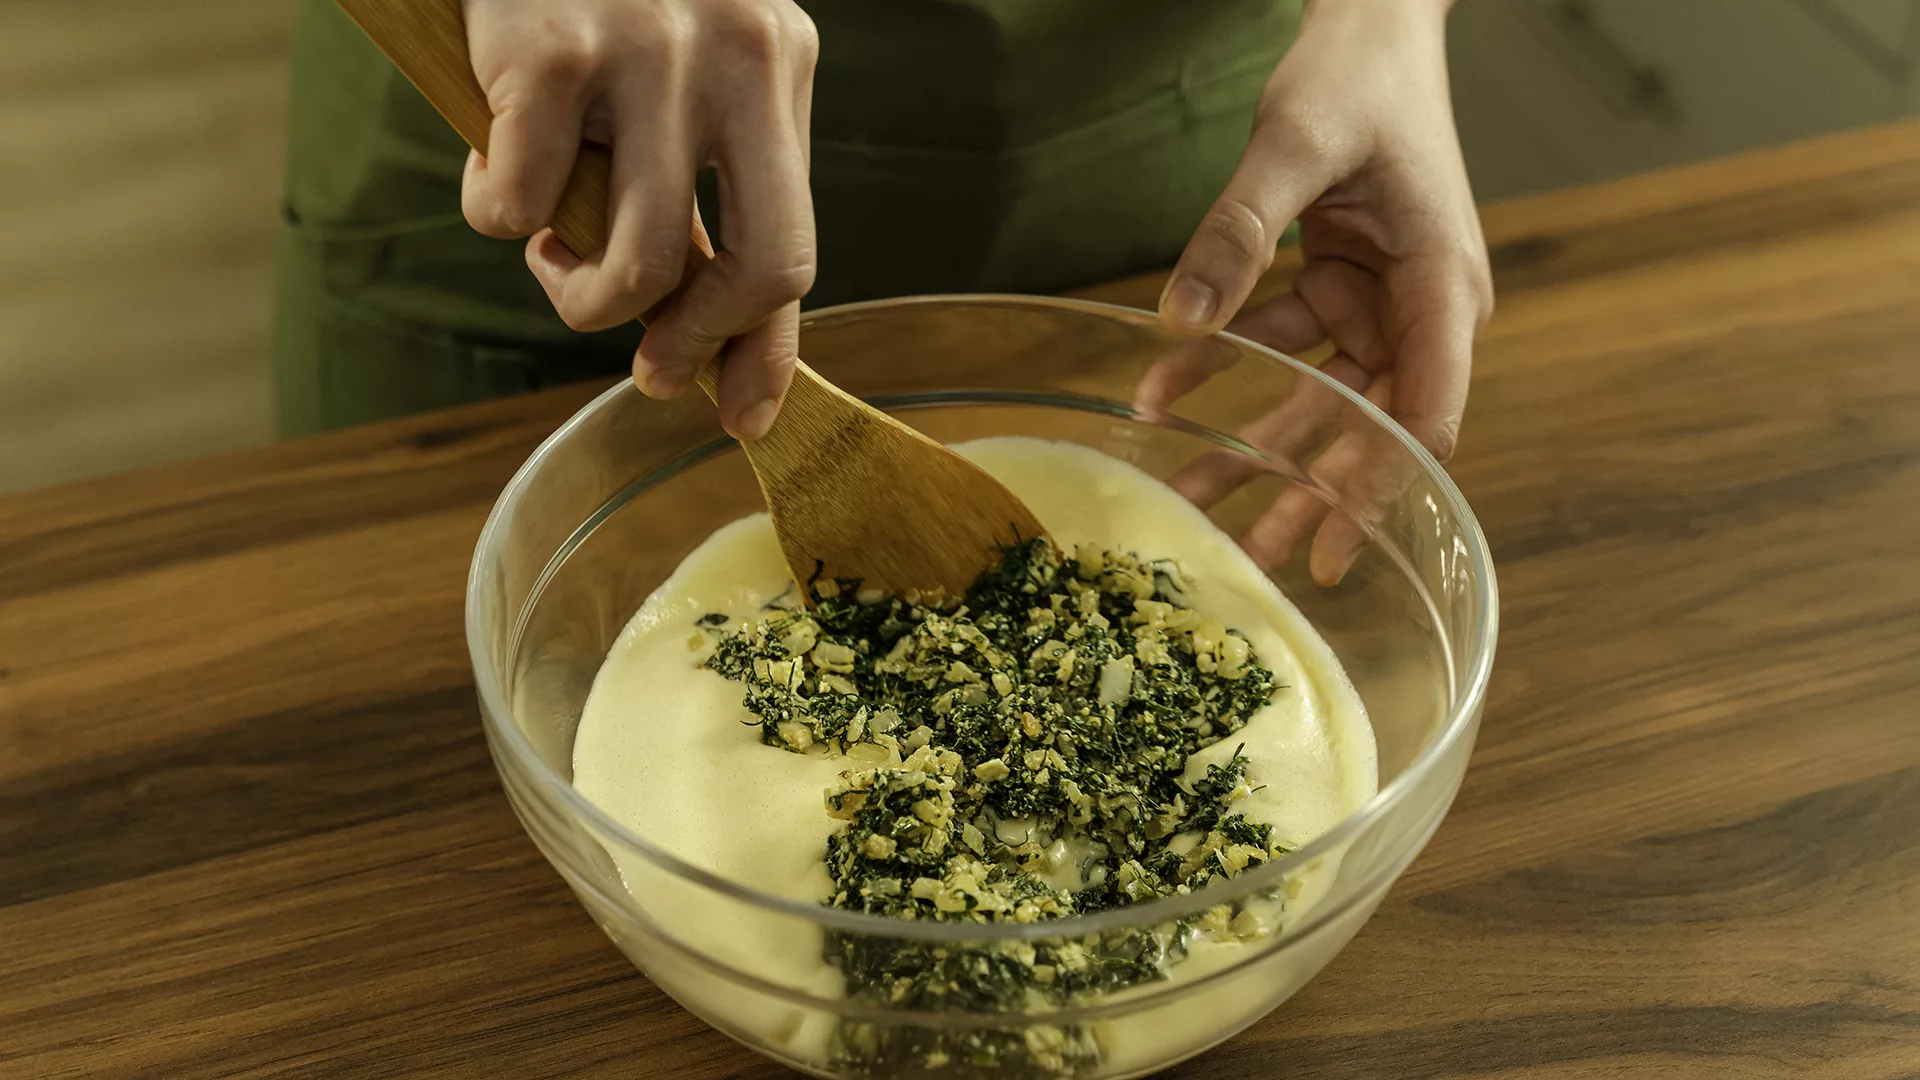 Nutrioli Recipe Book Recipe01 Spinach Feta Cheese Quiche06 Process05v2